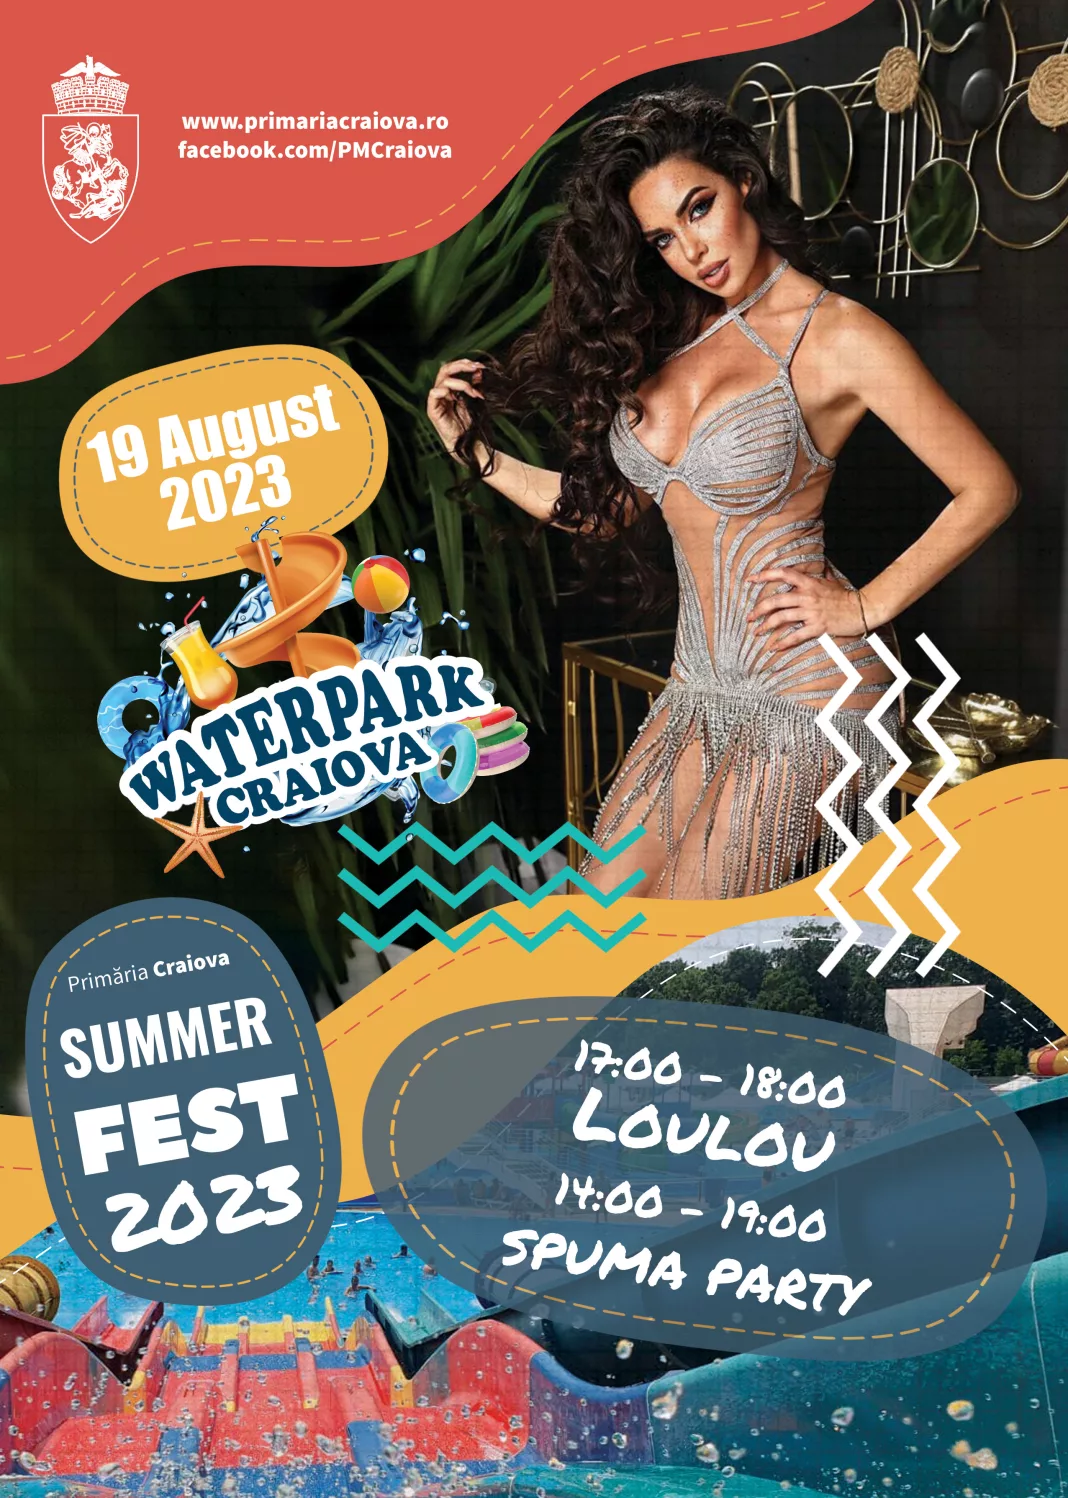 O artistă spectaculoasă – Loulou și Spuma Party sunt cele mai bune ingrediente pentru a petrece ziua de sâmbătă, 19 august, în cel mai mare parc acvatic din Oltenia – Craiova Water Park